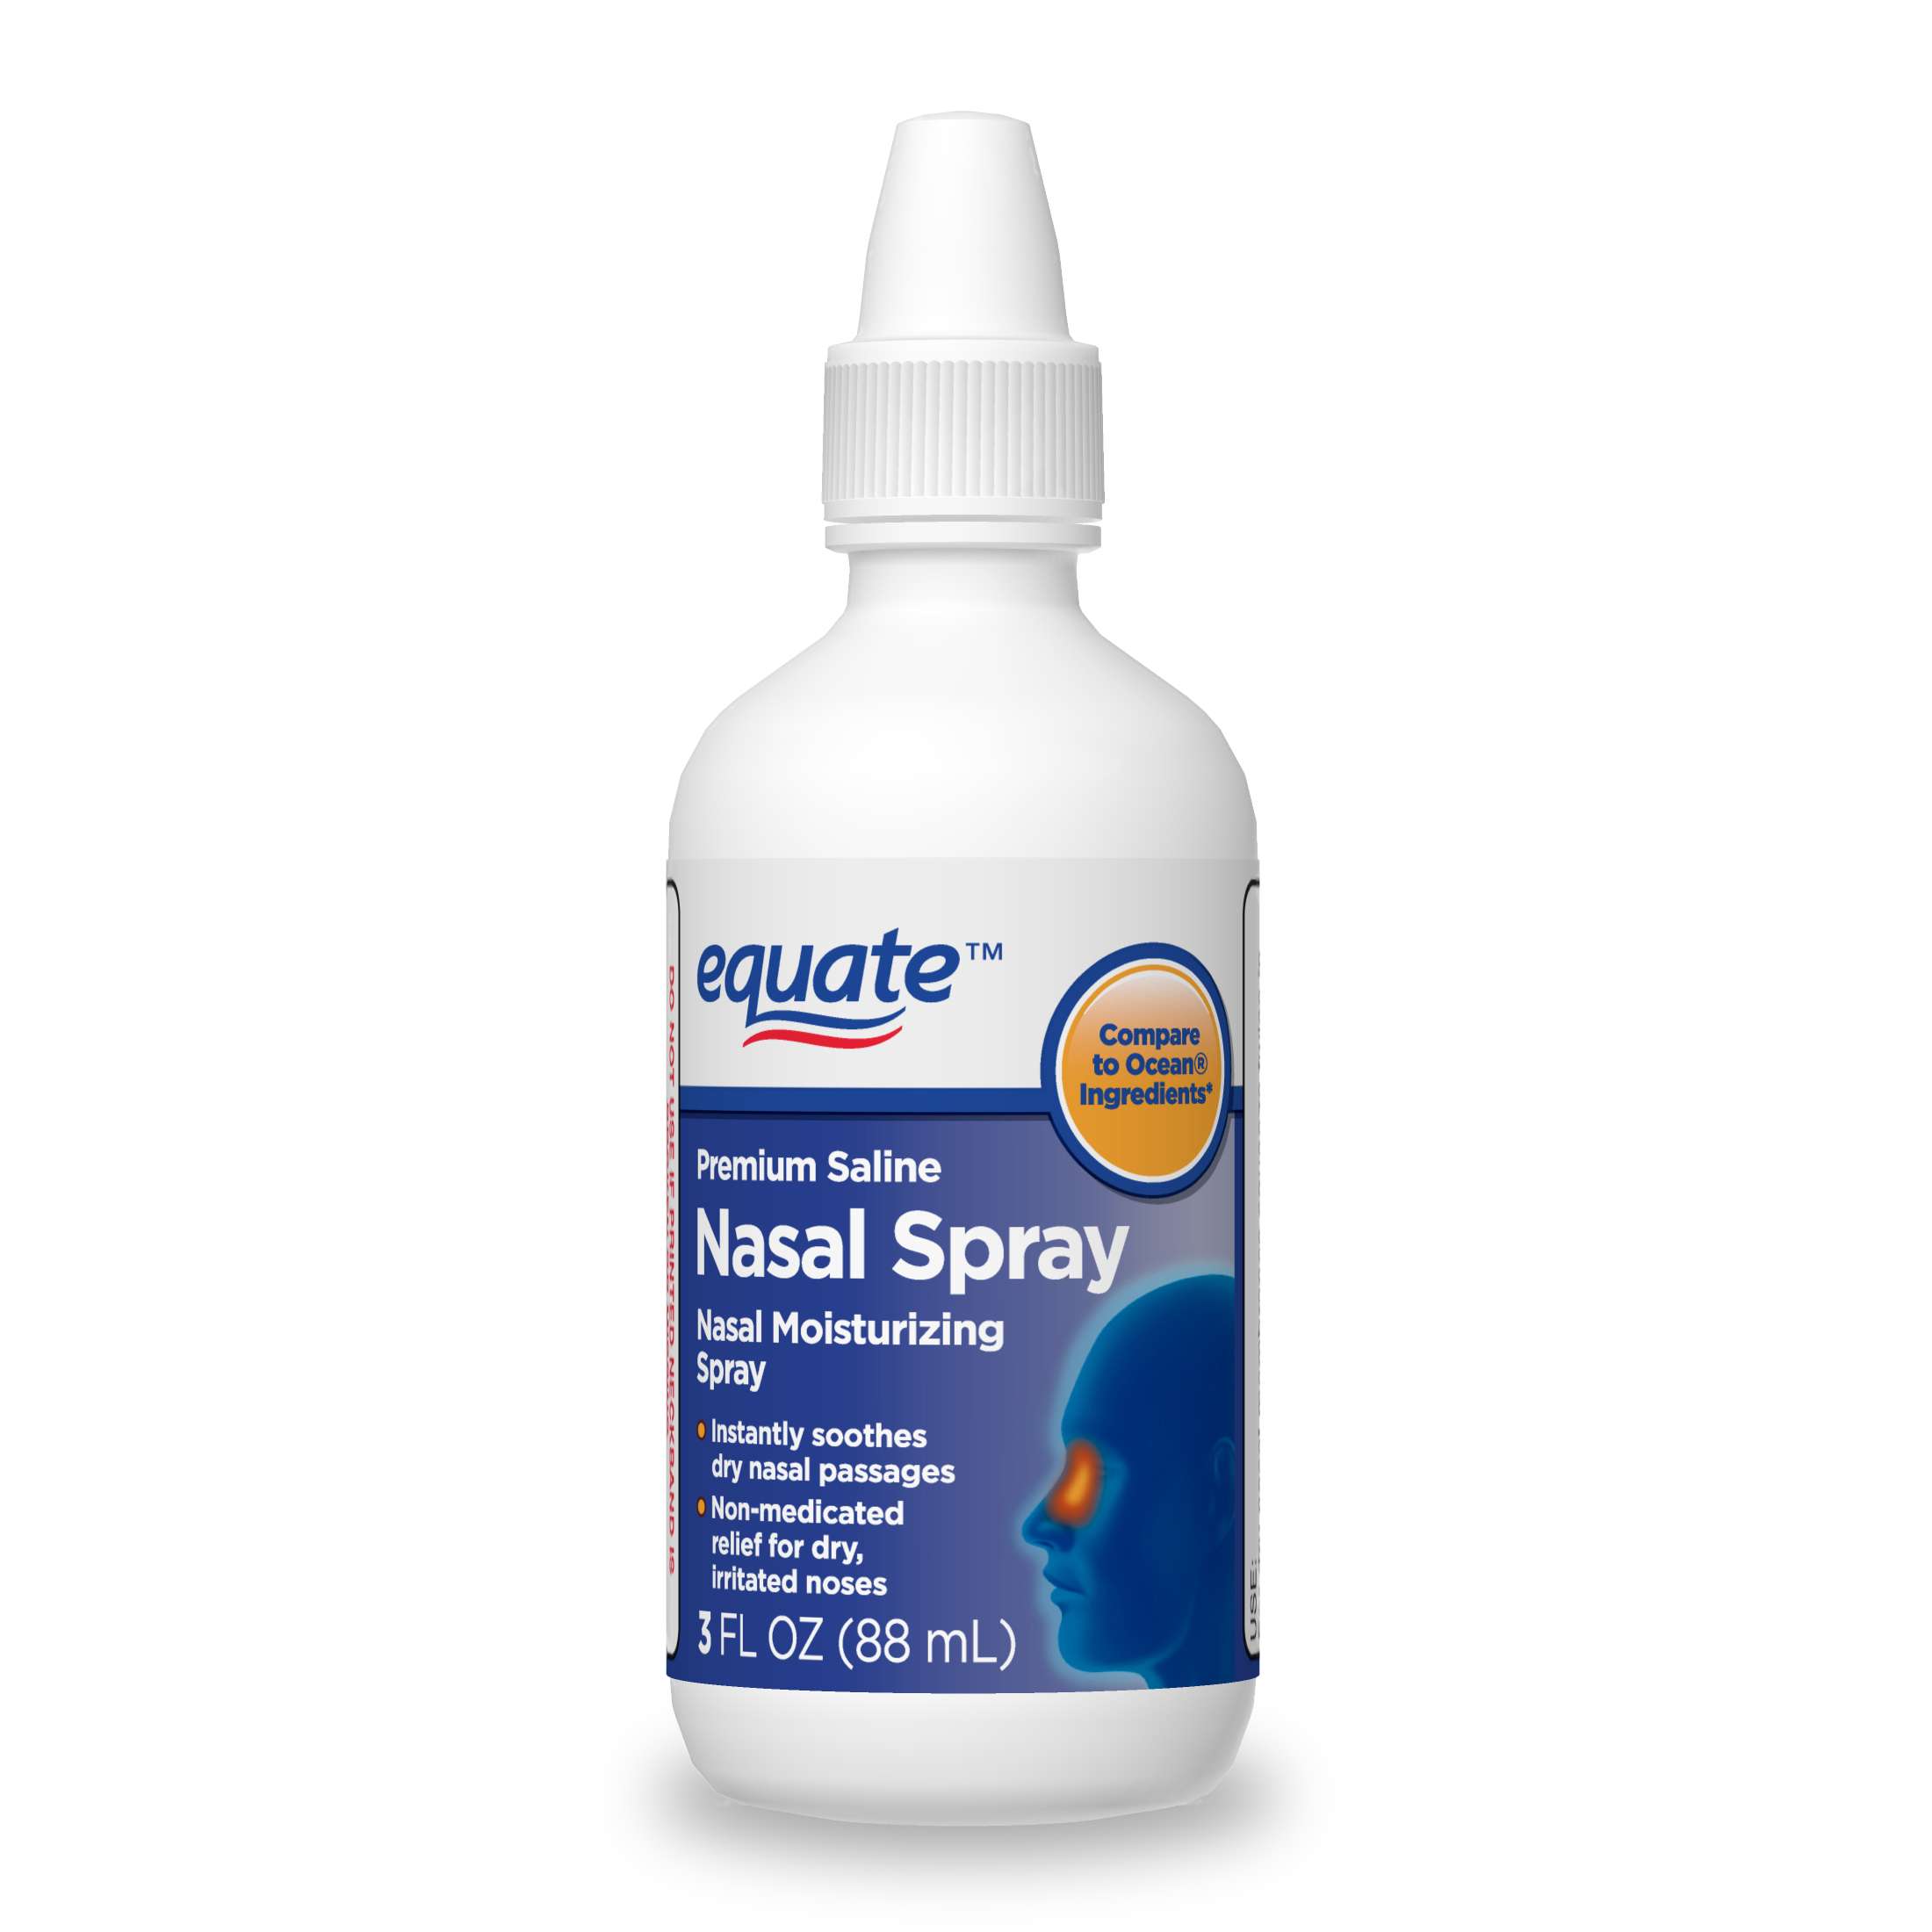 Equate Premium Saline Nasal Moisturizing Spray